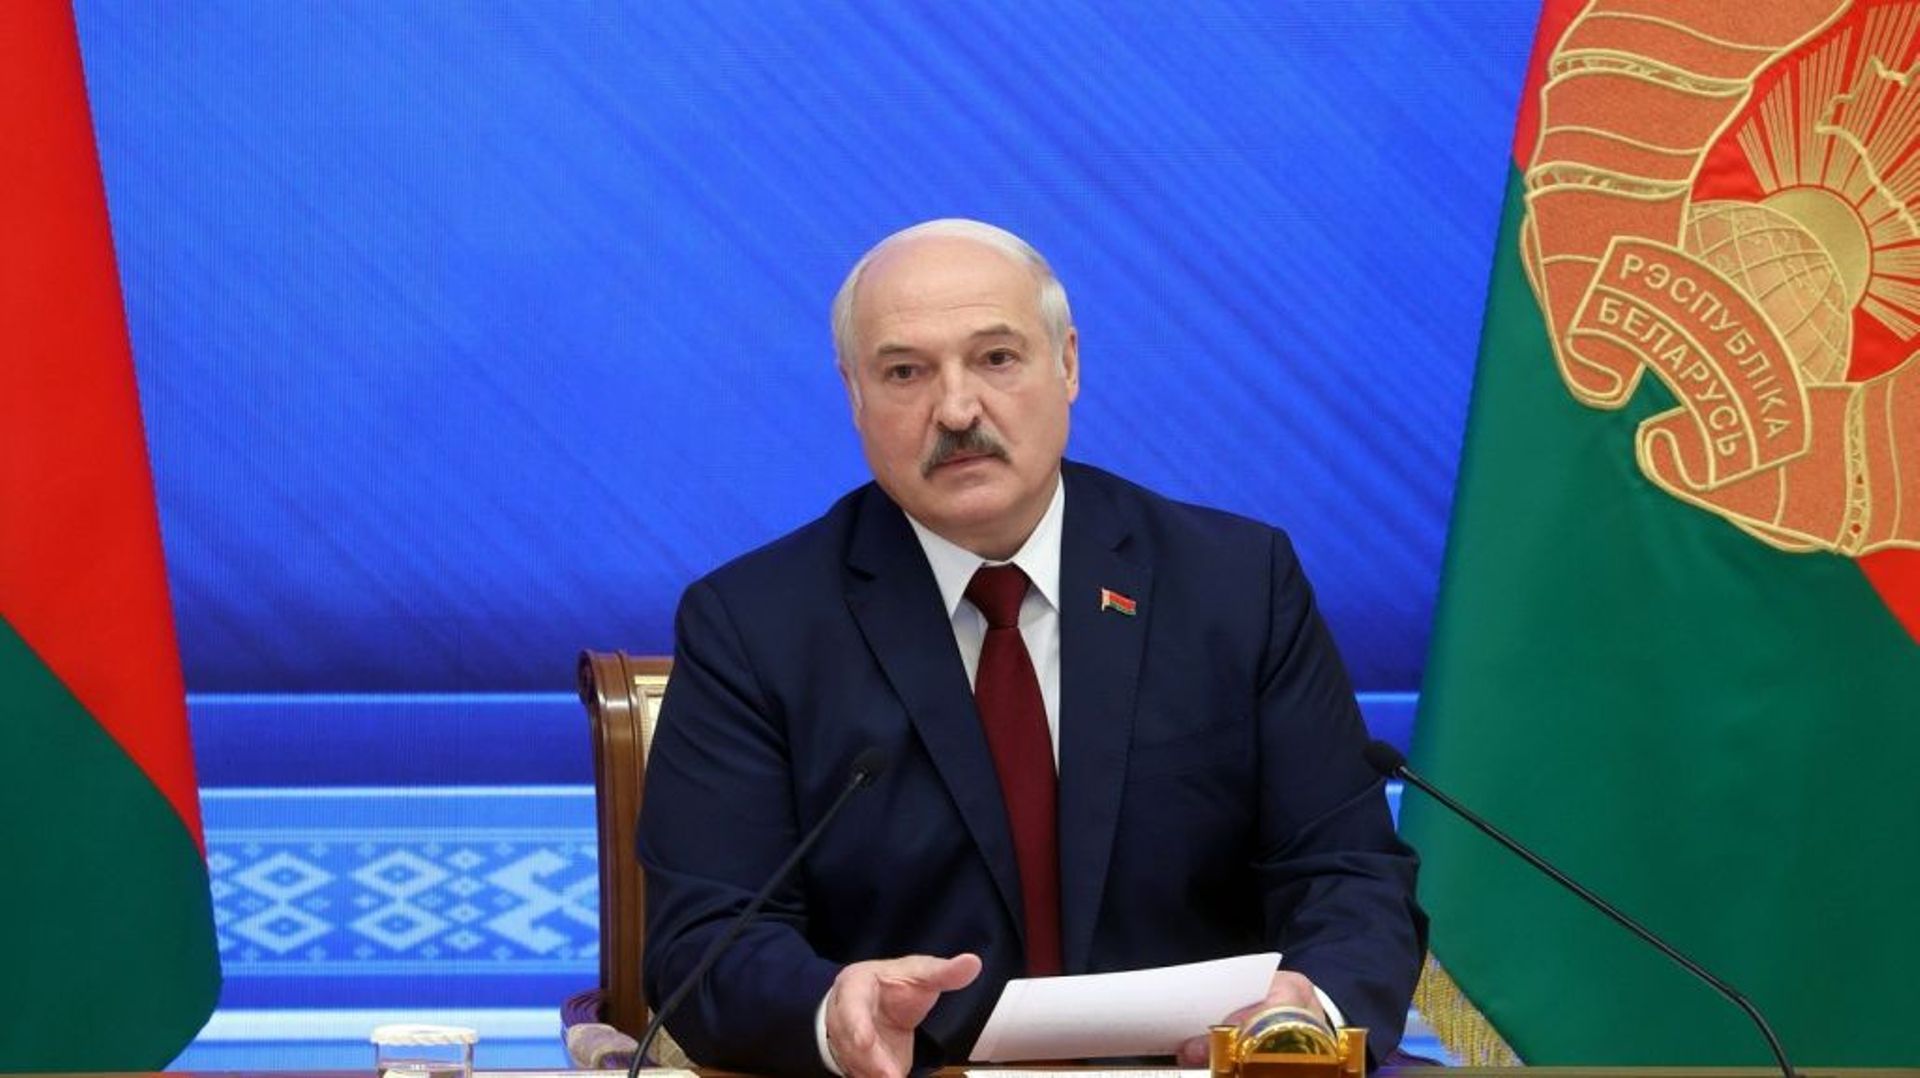 Le président bélarusse Alexandre Loukachenko lors d'une conférence de presse à Minsk, le 9 août 2021